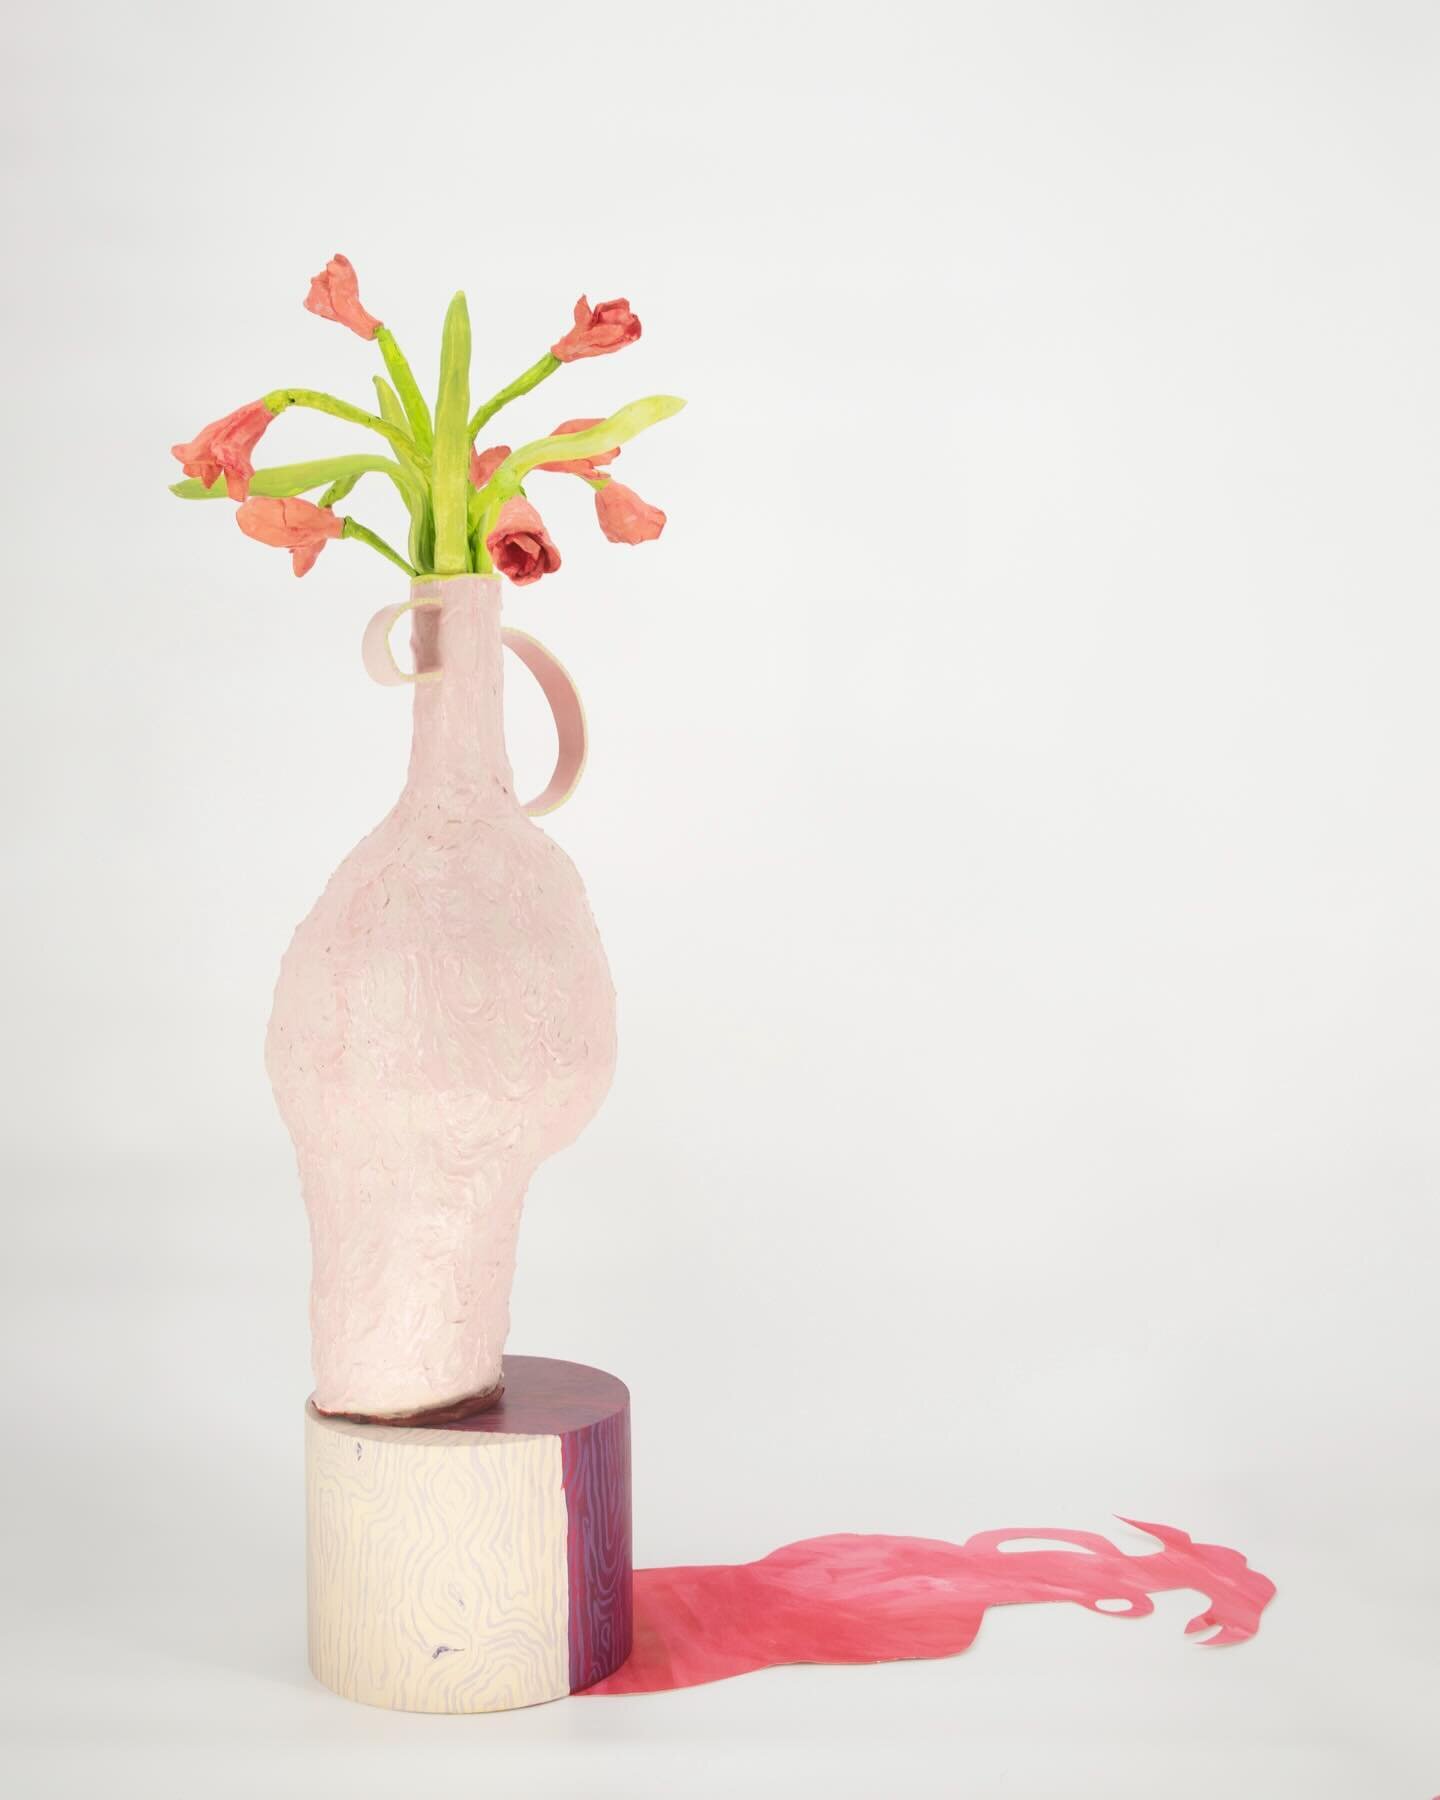 Newest piece in the studio. Summoninng springtime with this one🌷
.
.
.
#sculpture #sculptures #clayart #vase #tulips #clayflowers #jessicabottalico #jessbottalico #beaconartist #hudsonvalleyartist